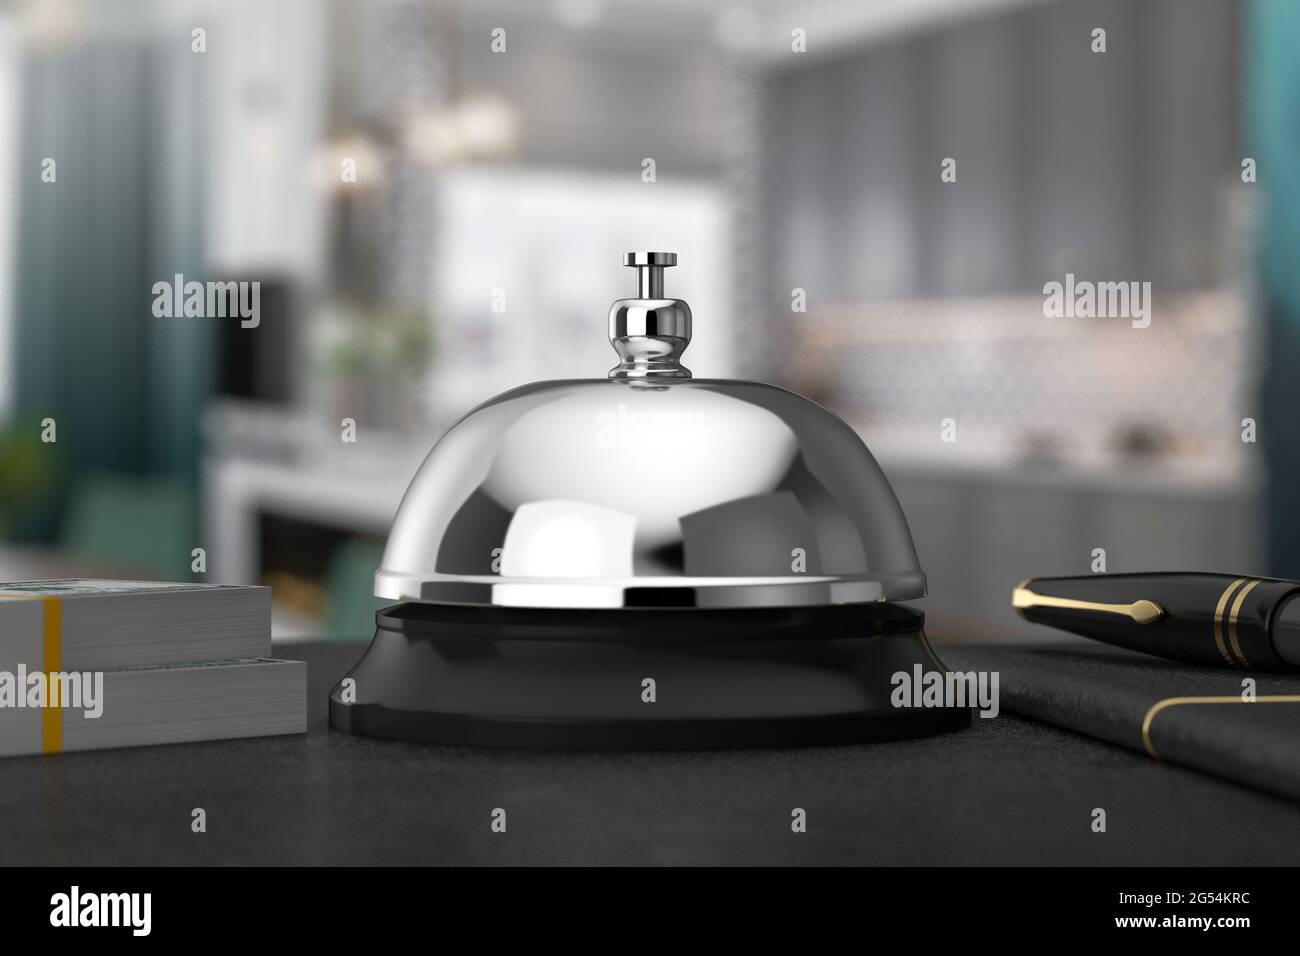 Empfang Ring Alarm Service Bell auf einem Tisch extreme Nahaufnahme. 3d-Rendering Stockfoto